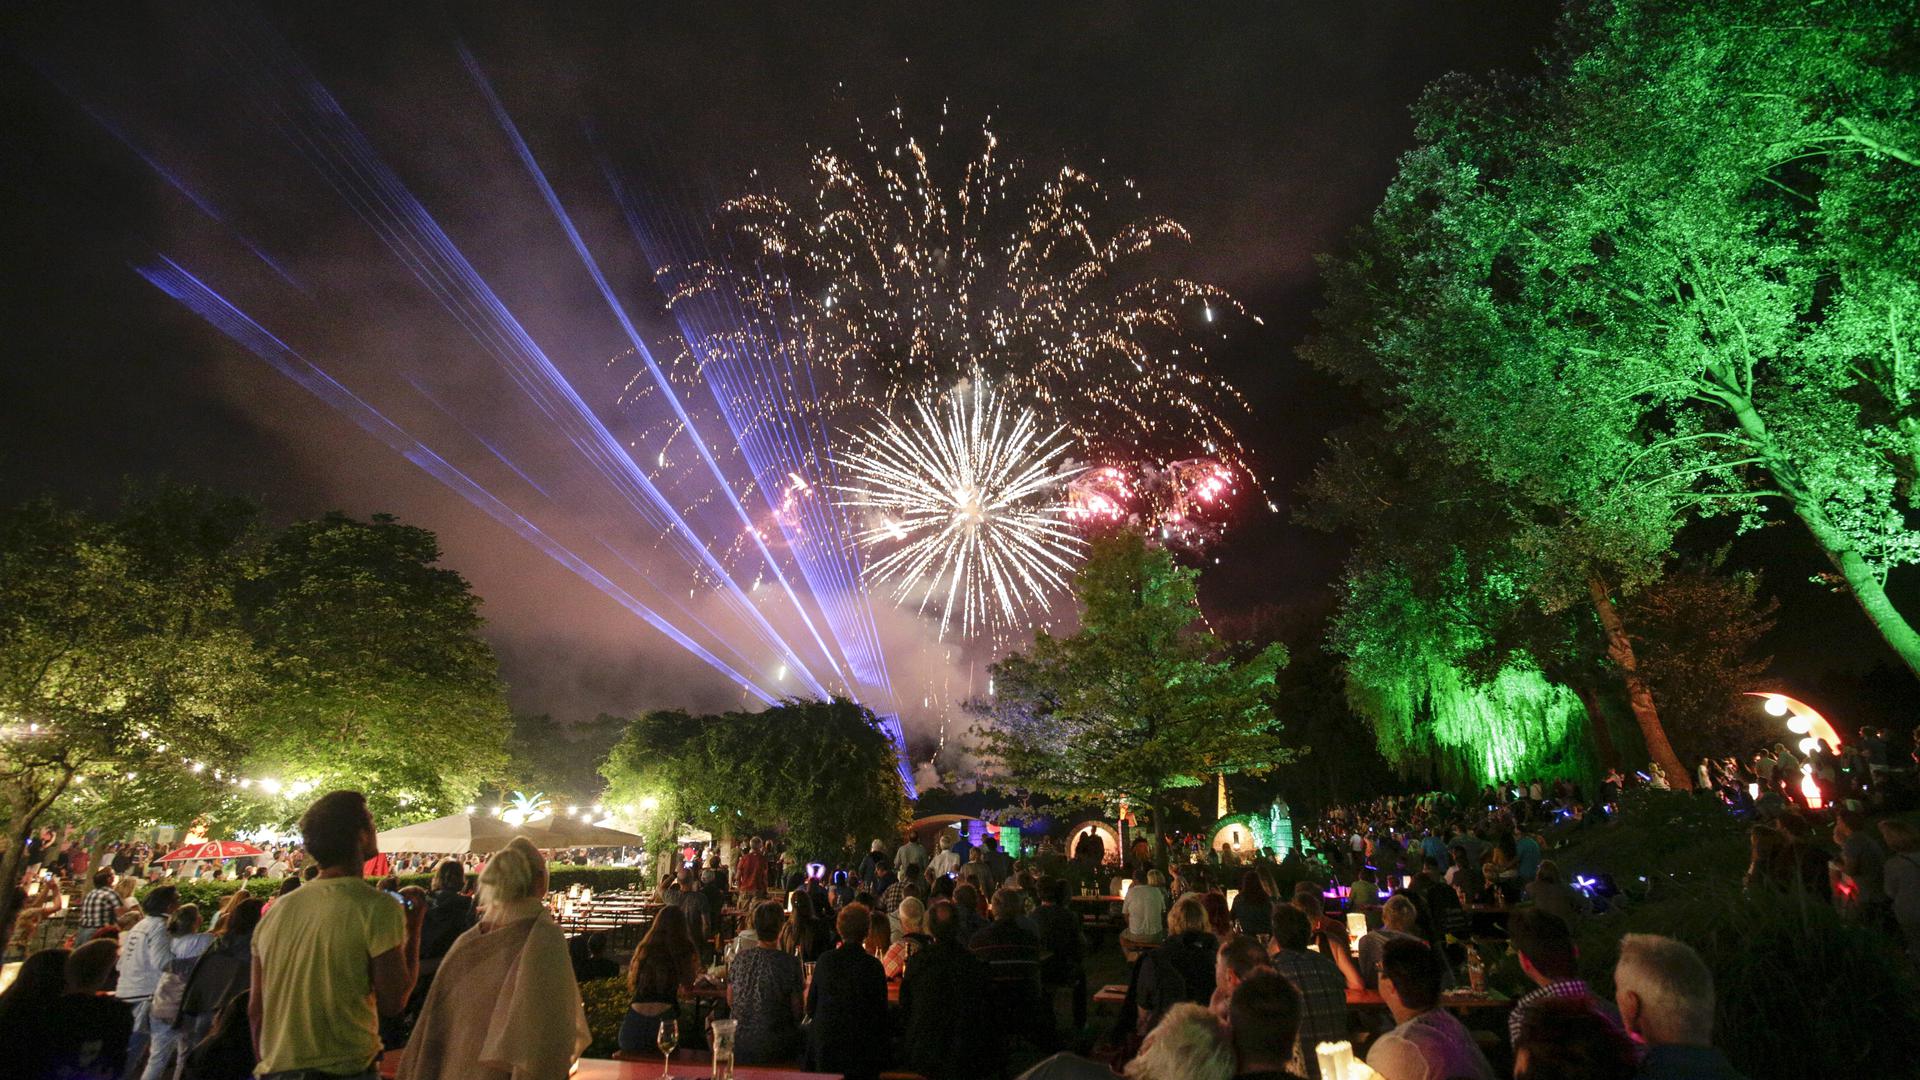 Spektakuläre Momente wird es auch in diesem Jahr wieder geben, wenn am heutigen Freitagabend das Lichterfest im Enzauenpark steigen wird.